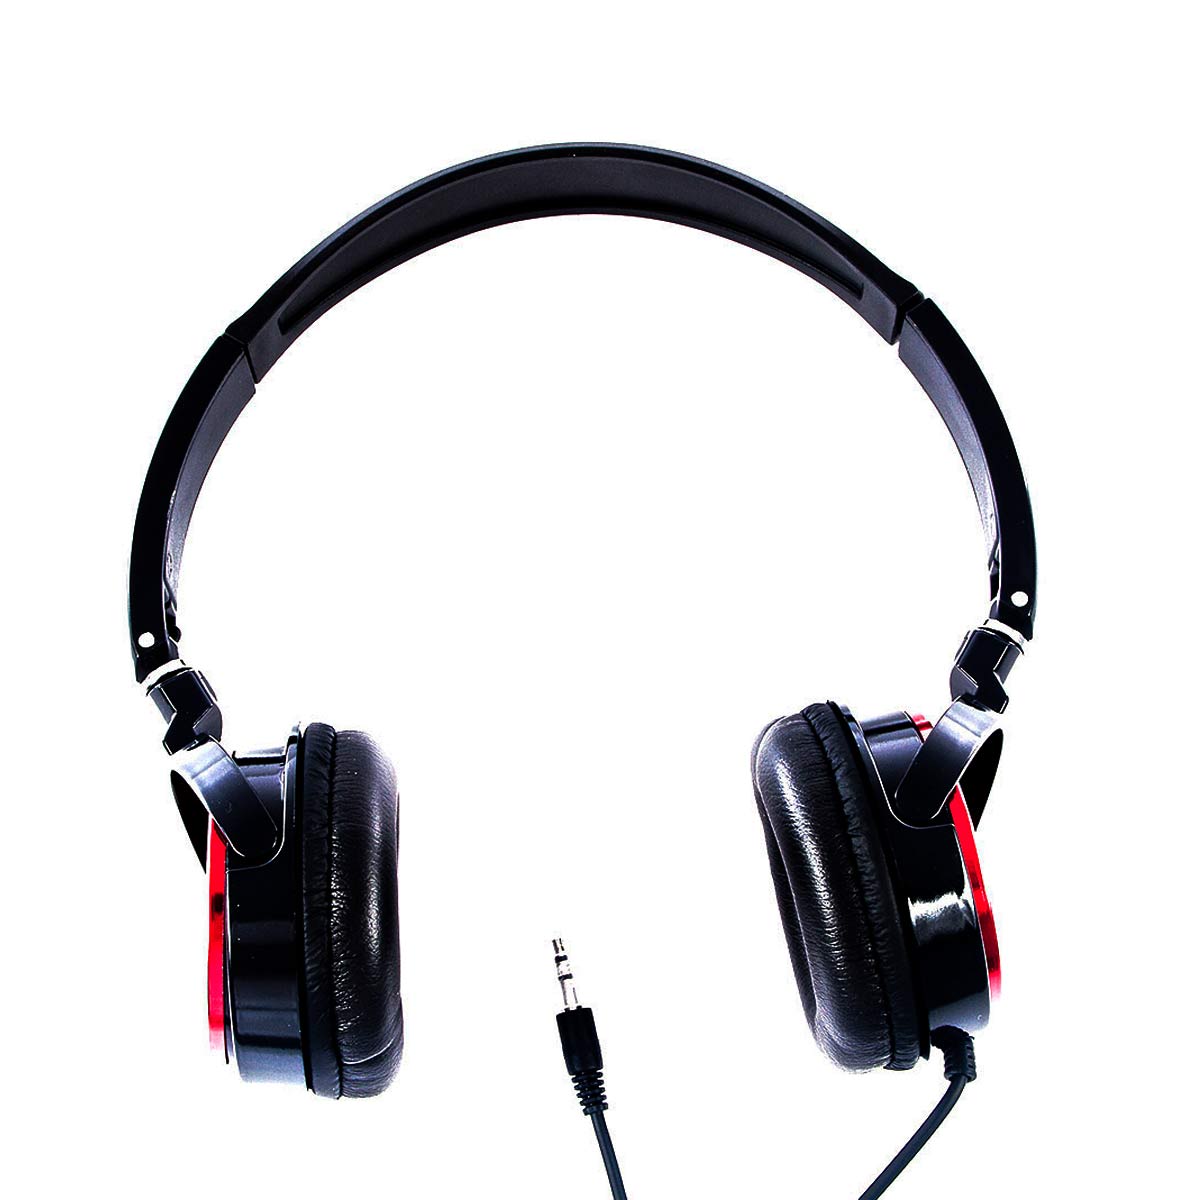 Menor preço em Fone de Ouvido Stereo Vermelho Headphone Logic - LS 2000 RD